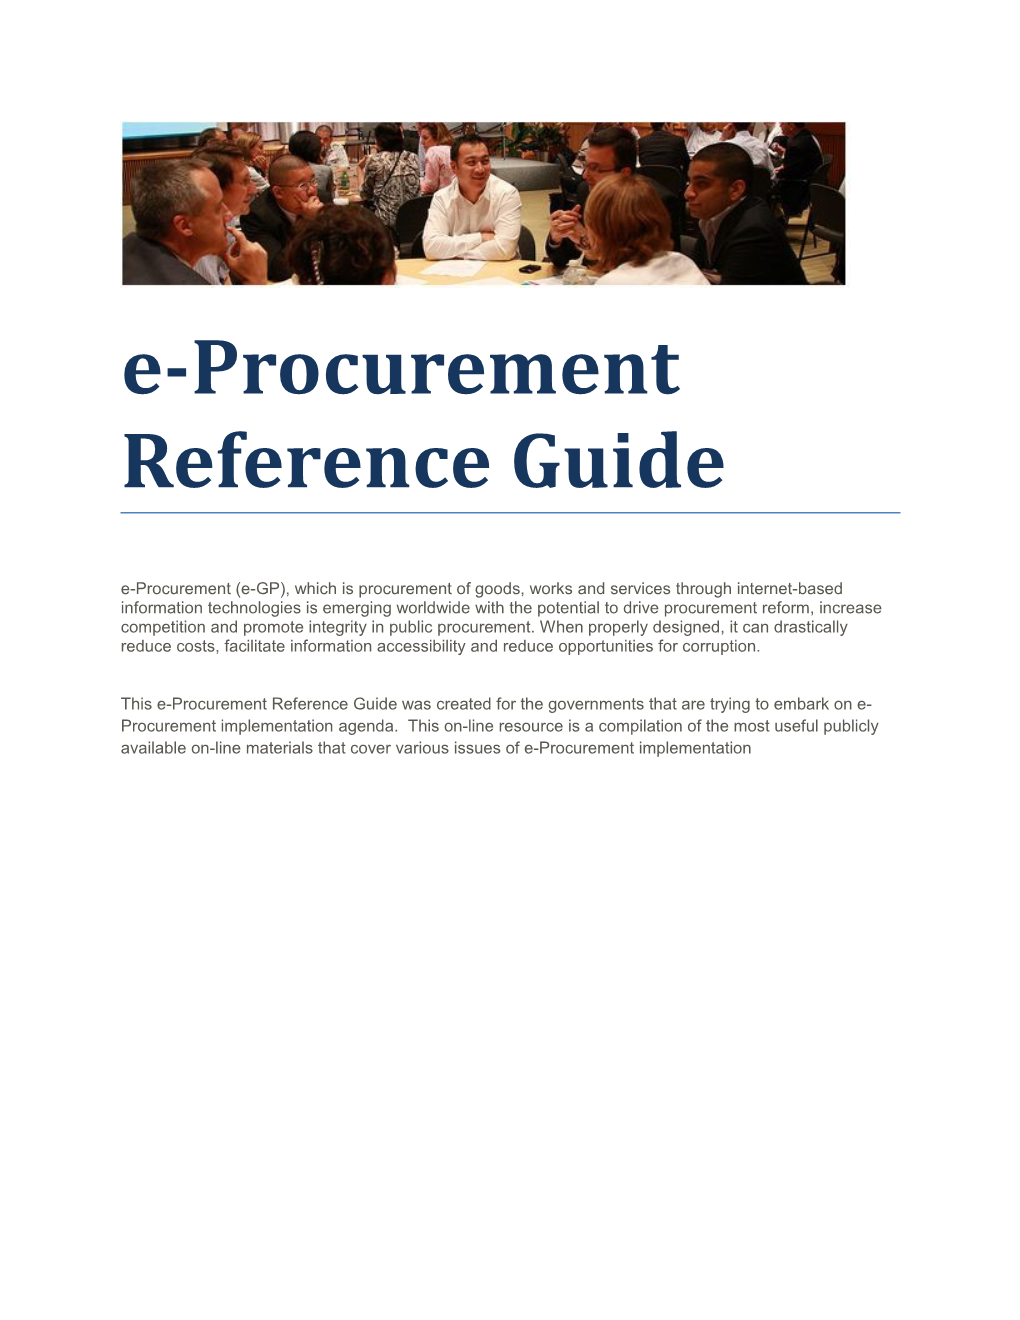 E-Procurement Reference Guide